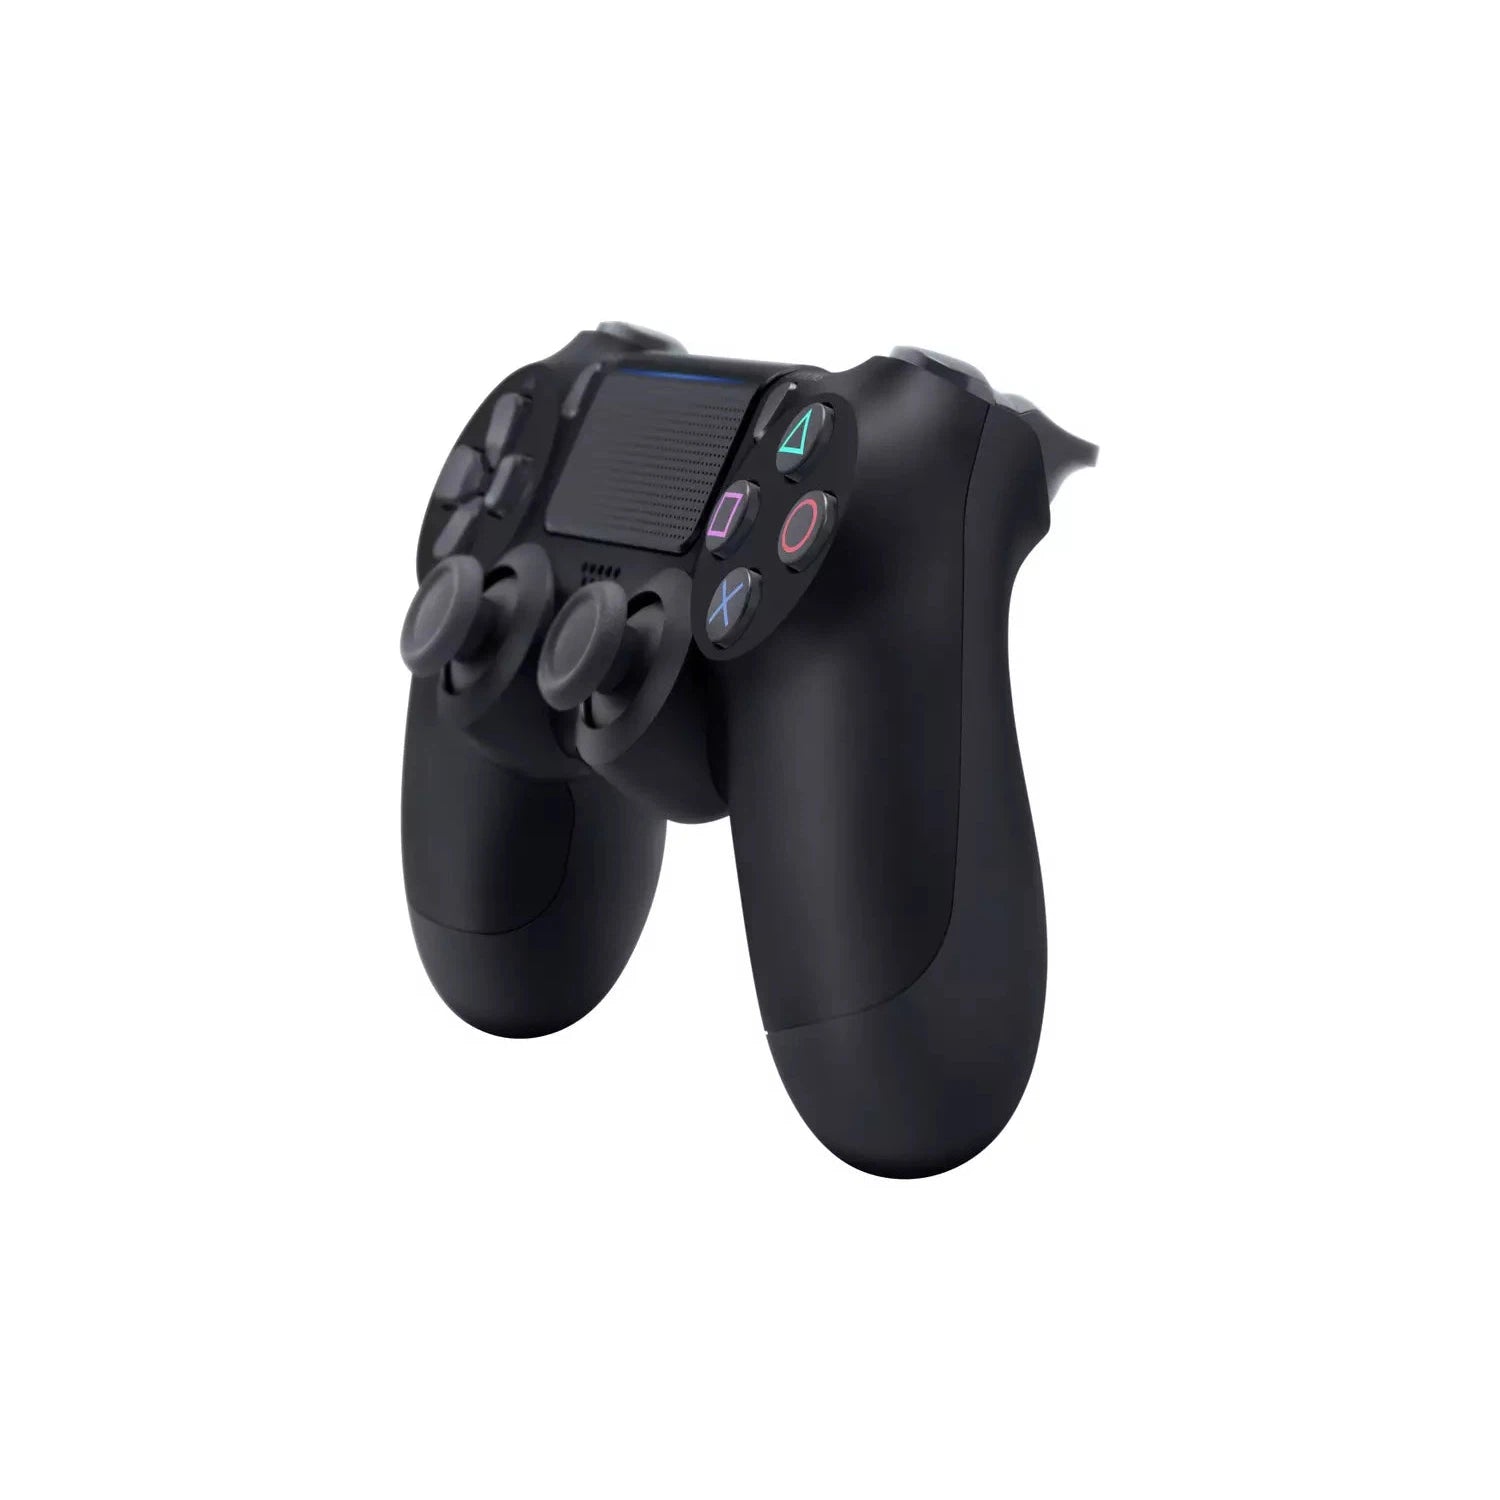 PlayStation 4 DualShock Controller V2 - Black - Refurbished Excellent